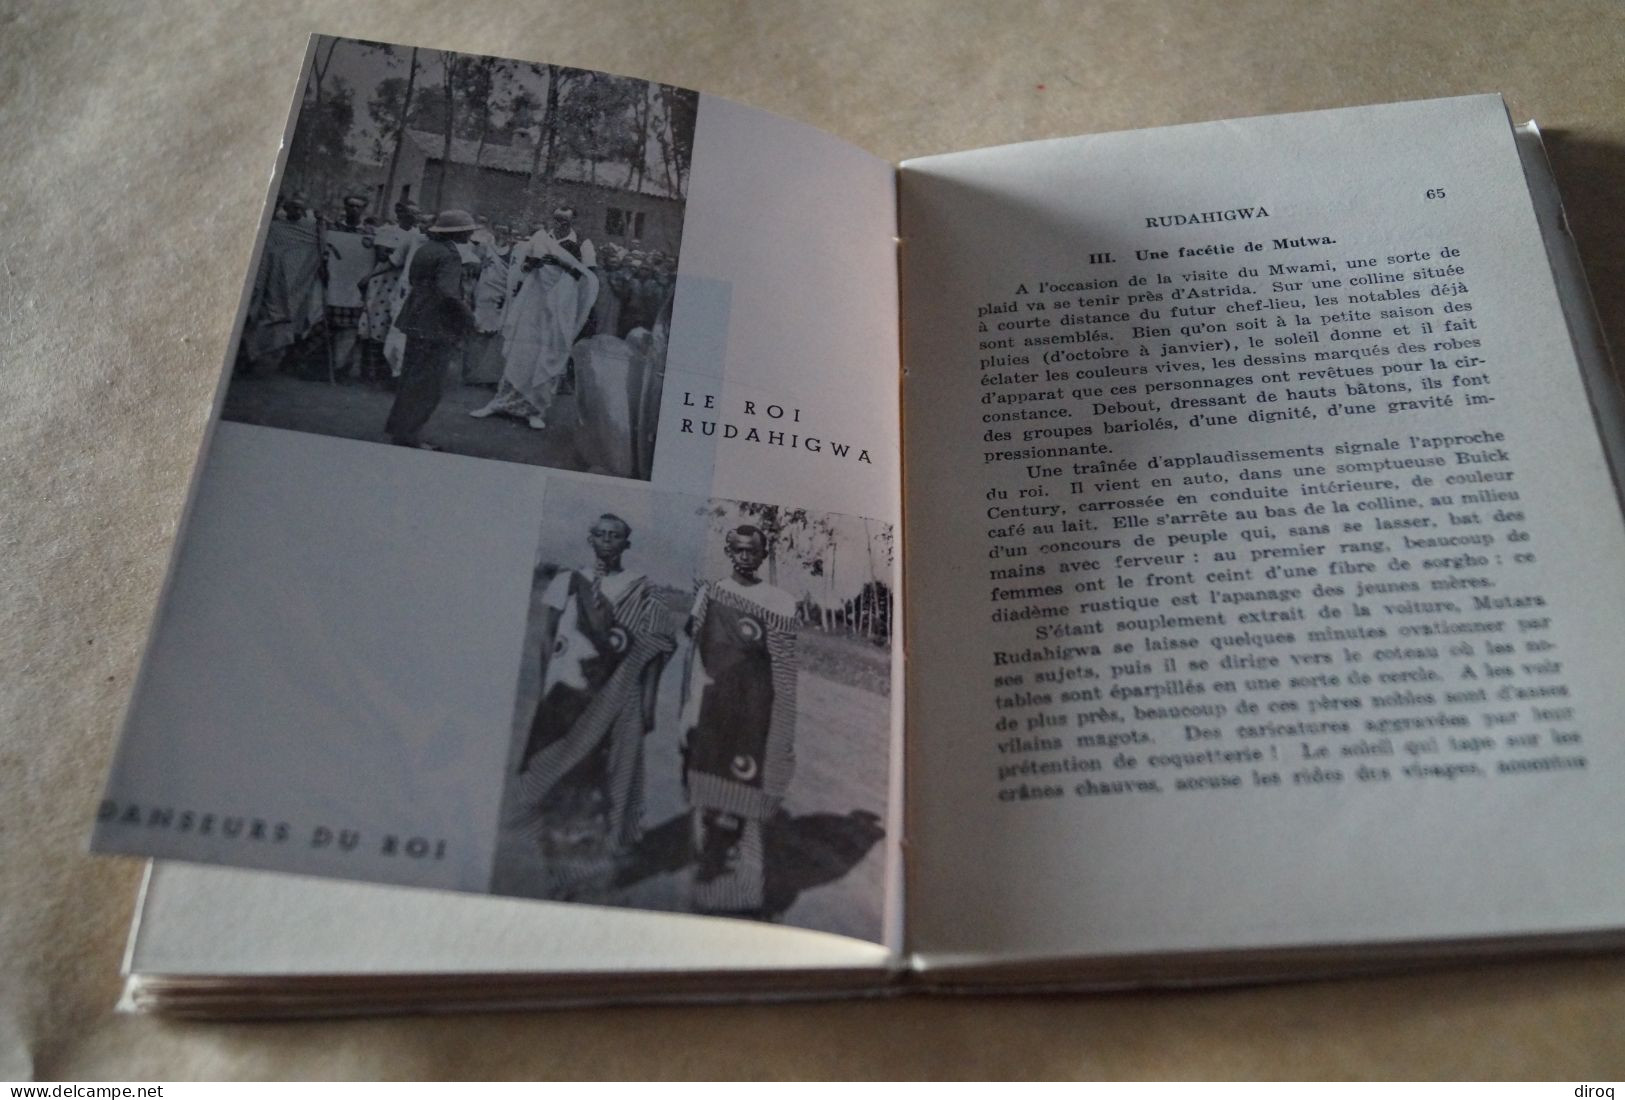 Congo Belge,1940,le Rwanda d'aujourd'hui,Paul Dresse,dédicace de l'auteur,124 pages,19,5 Cm./13 Cm.